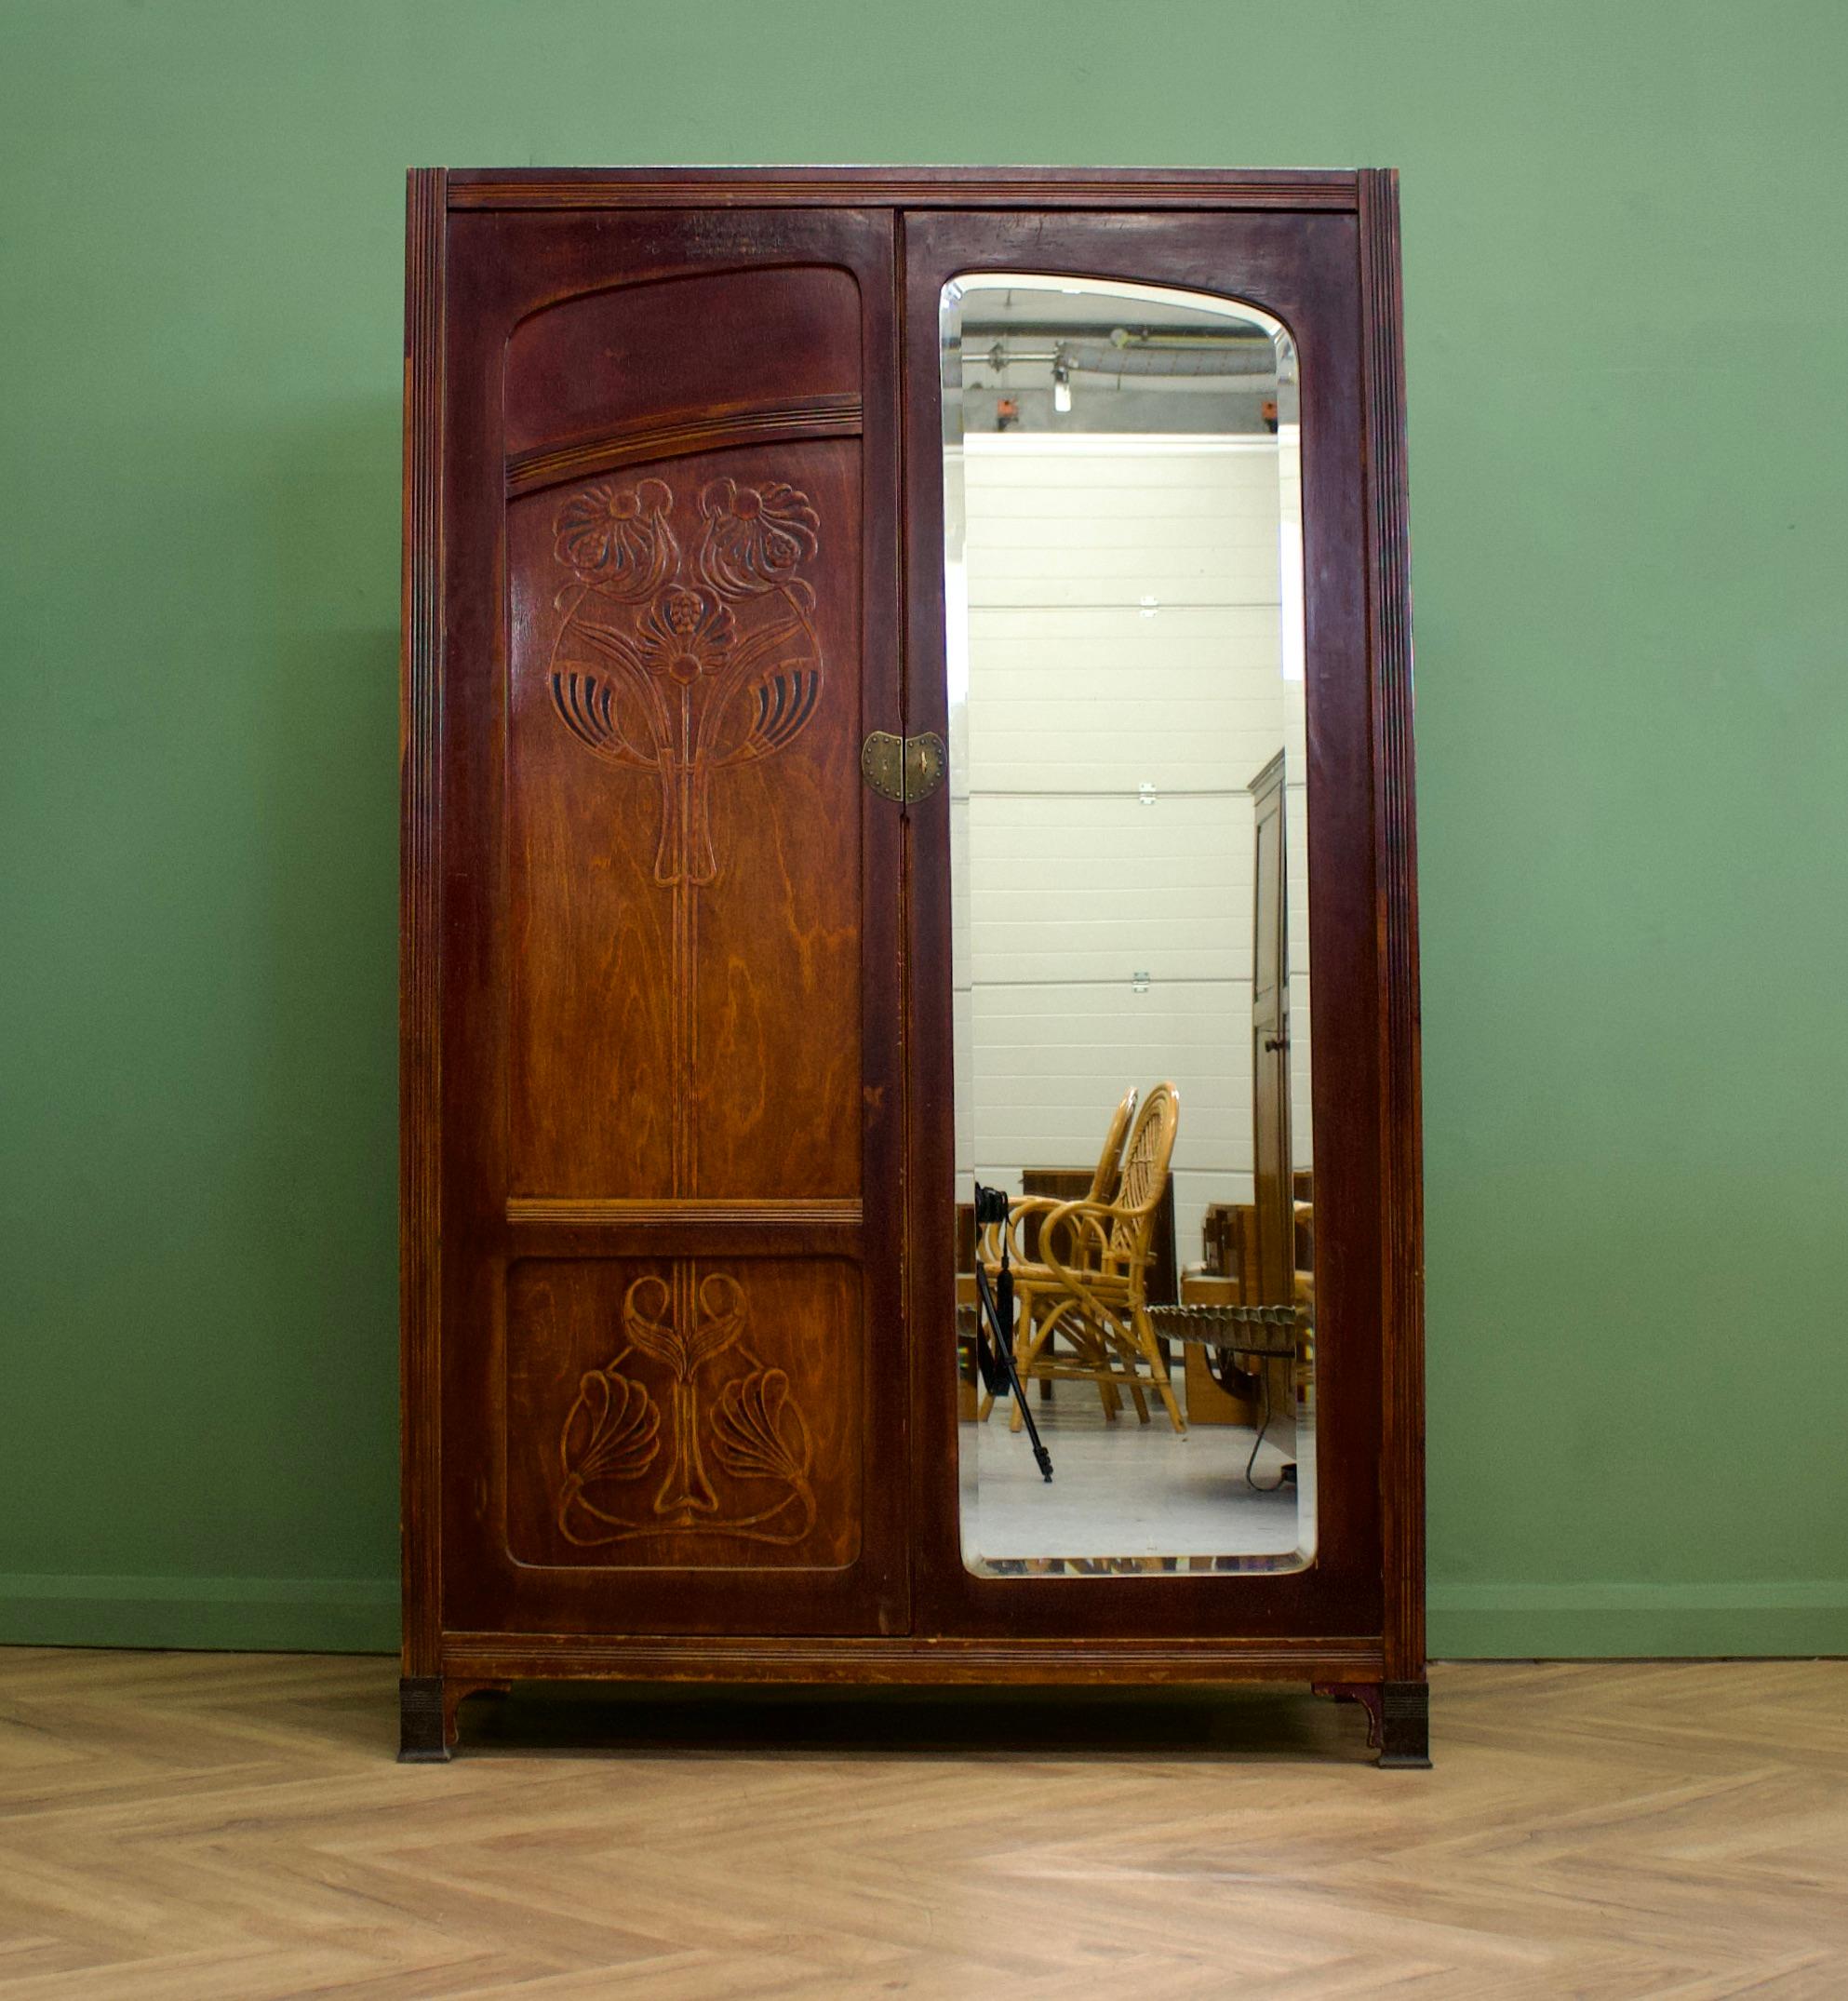 Impressionnante armoire autrichienne Art Nouveau conçue par J & J Kohn, vers les années 1900.
Miroir sur toute la longueur et détails en laiton à l'extérieur.
L'intérieur est équipé d'un rail de suspension et d'étagères.